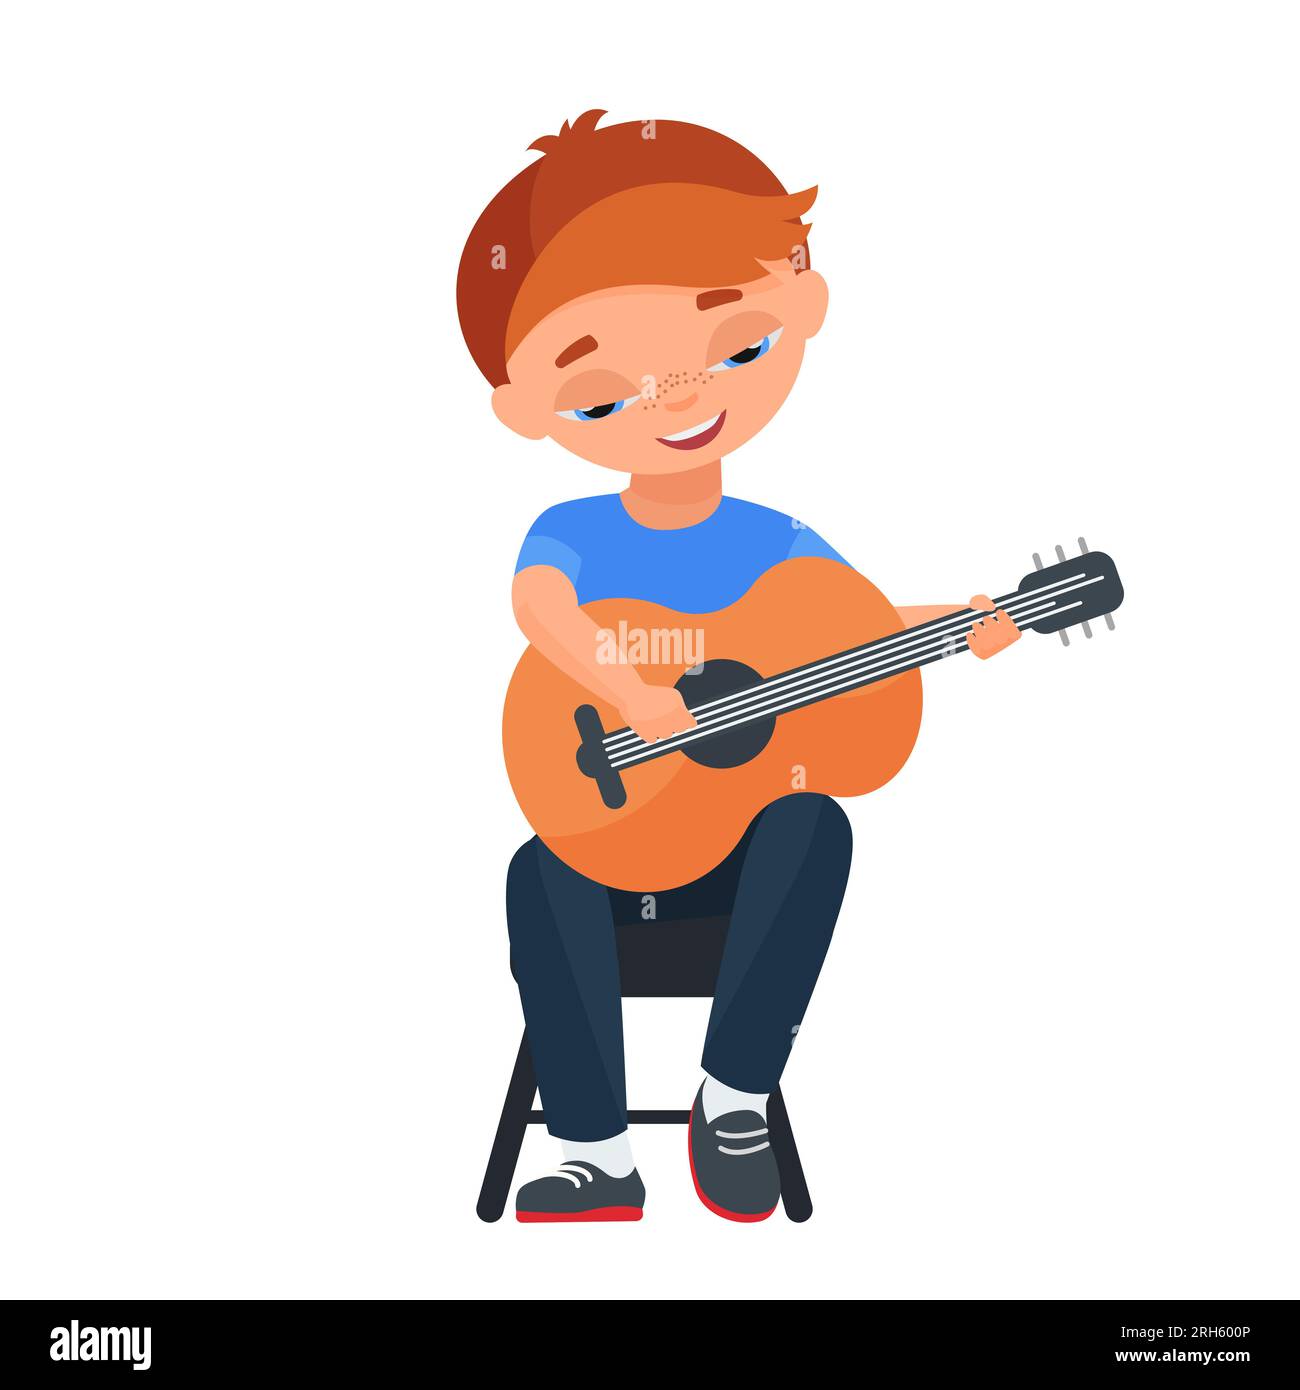 Little boy playing guitar. Musical children, school concert artist vector cartoon illustration Stock Vector